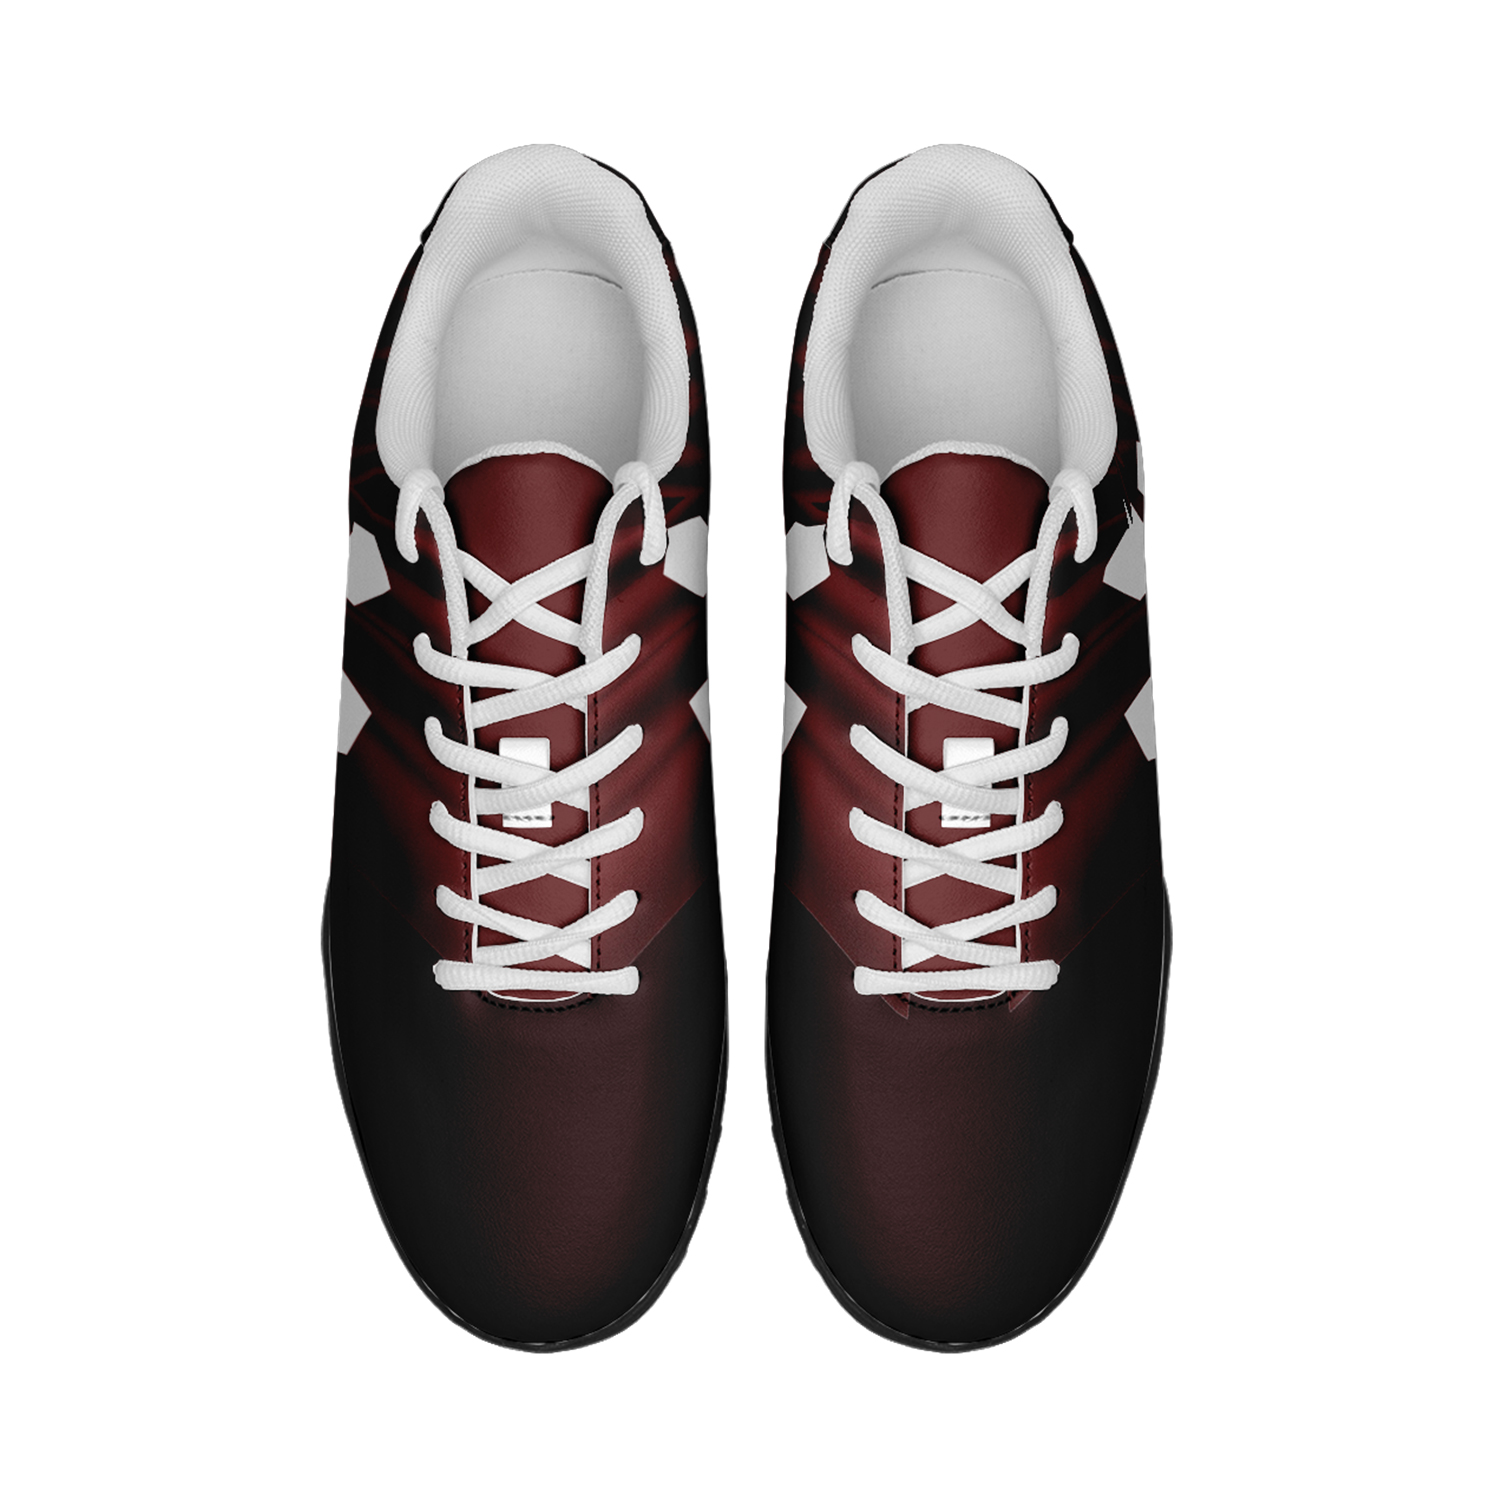 Zapatos de fútbol personalizados del equipo Qatar de la Copa Mundial 2022